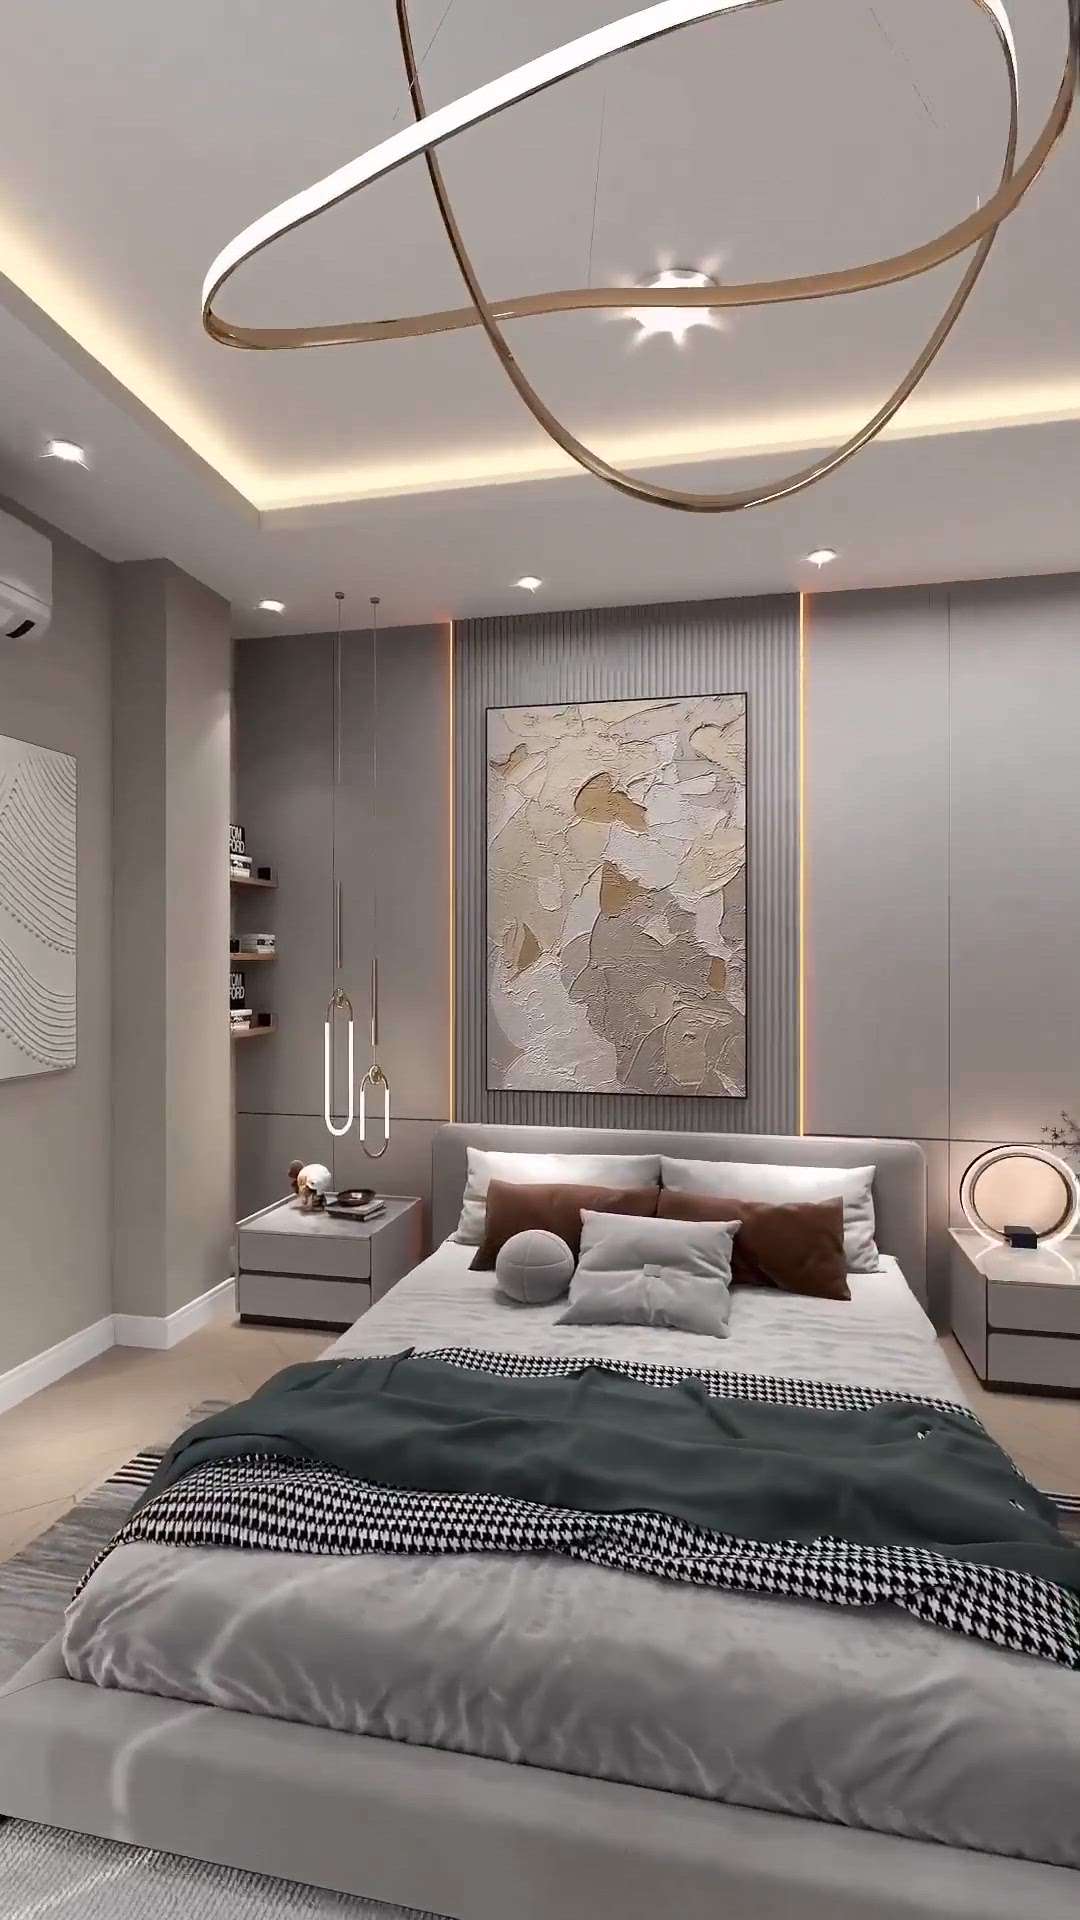 Bedroom design ✨
✨ Contact - 8319099875

#HouseRenovation #renovations #InteriorDesigner #MasterBedroom #KingsizeBedroom #BedroomIdeas#BedroomDesigns